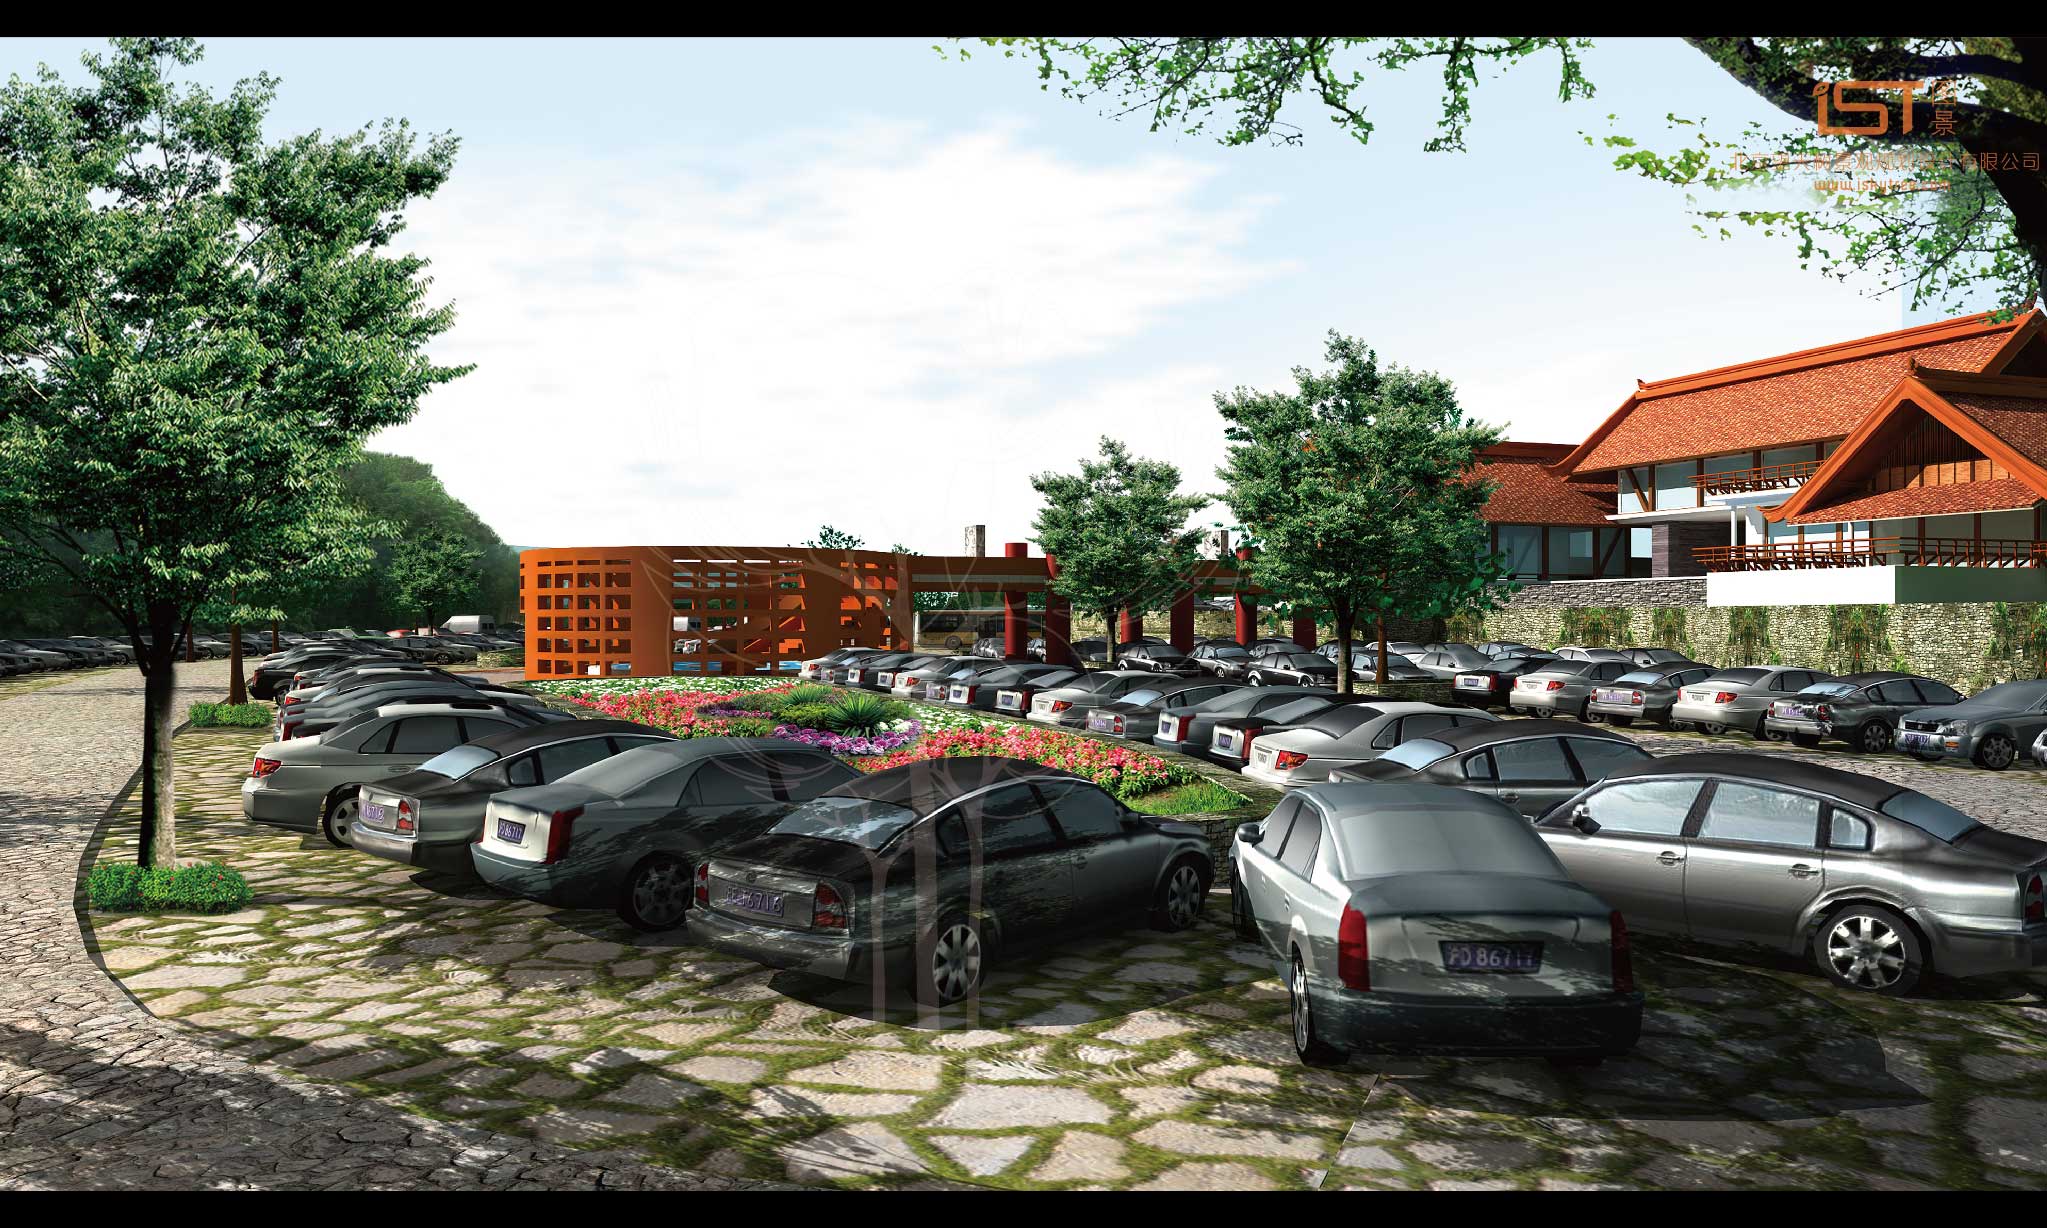 游客中心、生态停车场设计方案效果表现